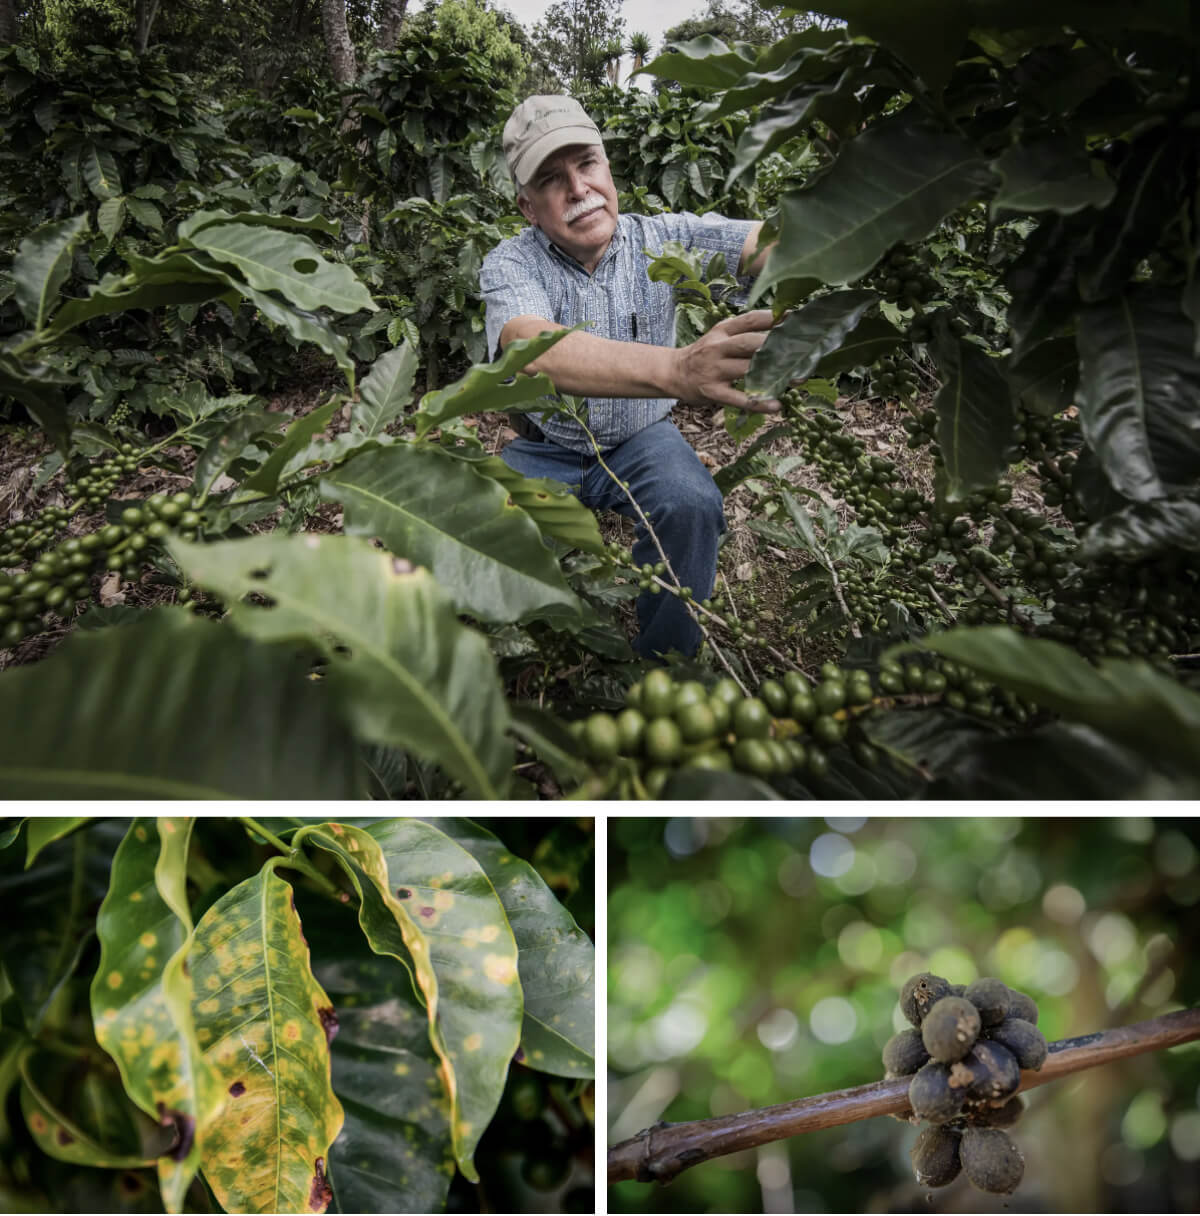 (Ảnh trên) Một nhà sản xuất cà phê đang kiểm tra cây trồng trong đồn điền của mình ở Barva, Costa Rica, ngày 25/08/2015. (Ảnh dưới bên trái) Một cây cà phê bị nhiễm nấm Roya ở trang trại Barva. (Dưới cùng bên phải) Hạt cà phê bị côn trùng đục tại một đồn điền ở làng Hanbal, Ấn Độ, hôm 29/01/2024. (Ảnh: Ezequiel Becerra/AFP qua Getty Images, Abhishek Chinnappa/Getty Images)